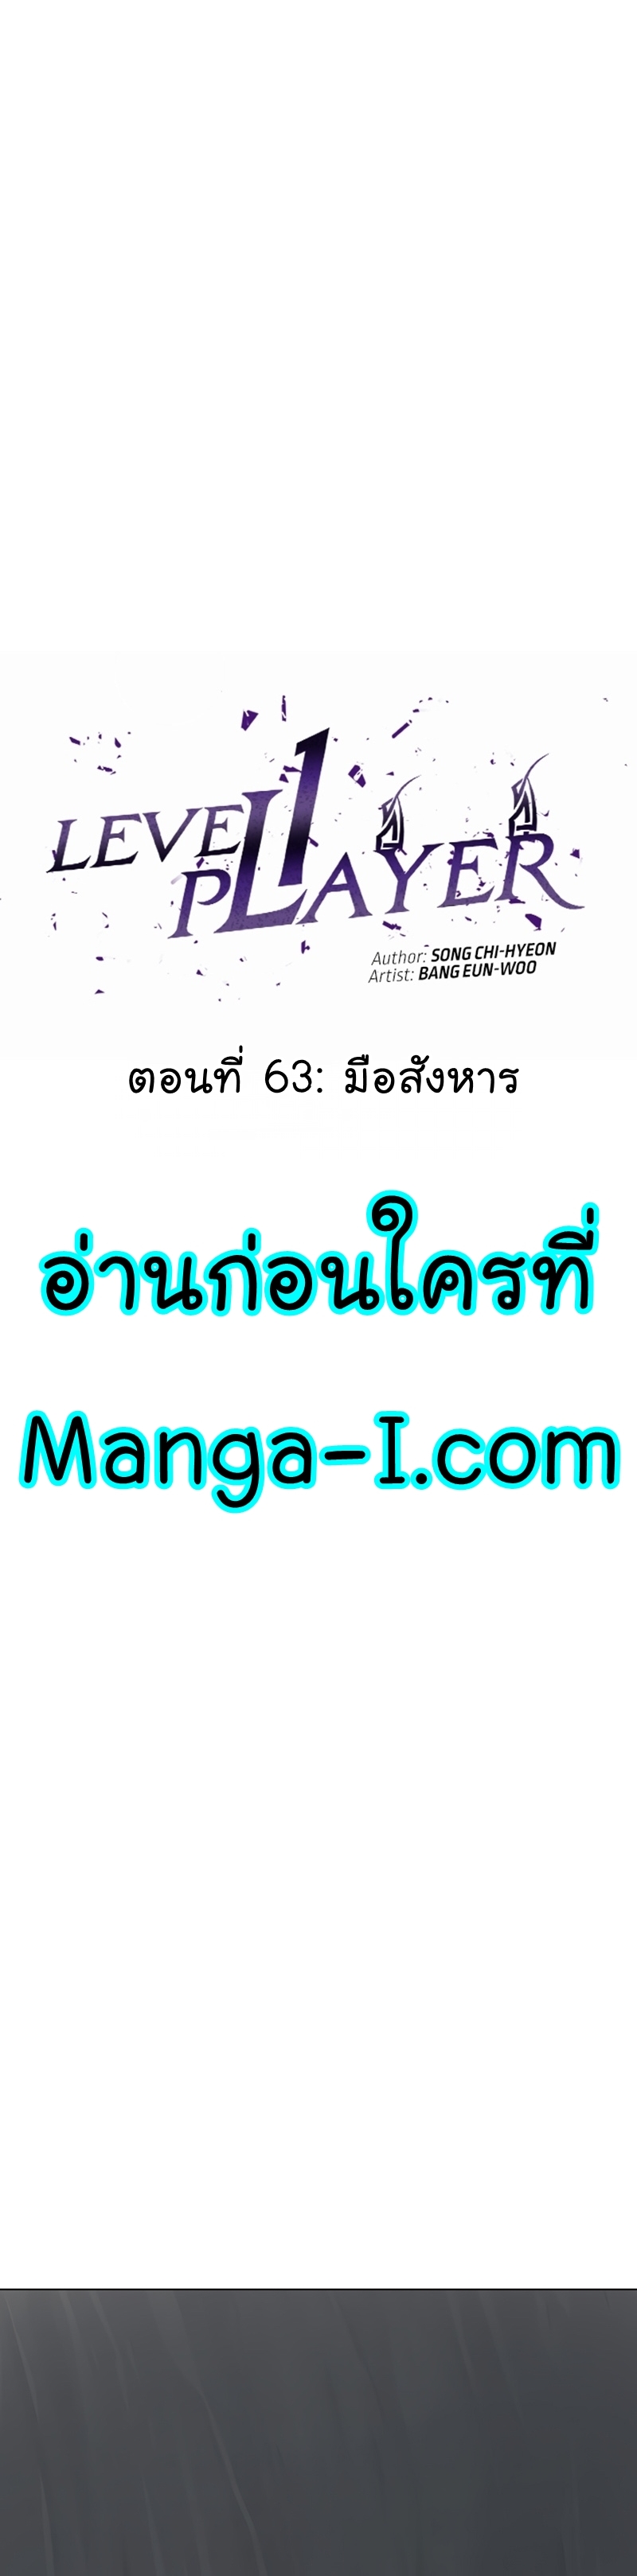 Manga Manhwa Level 1 Player 63 (9)